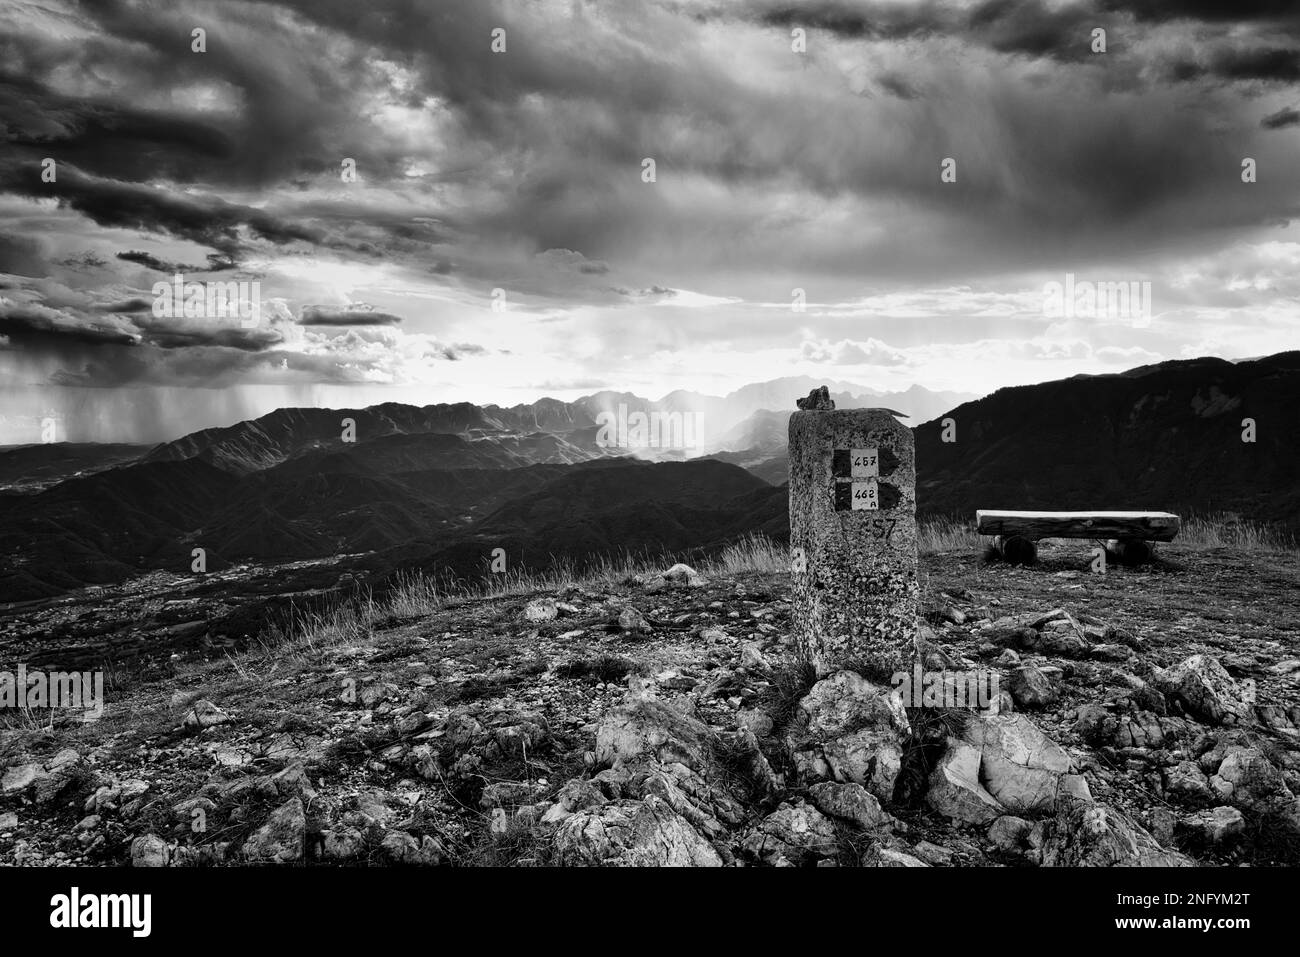 Ein großer Blickwinkel auf die Landschaft in Schwarz-Weiß. Stockfoto